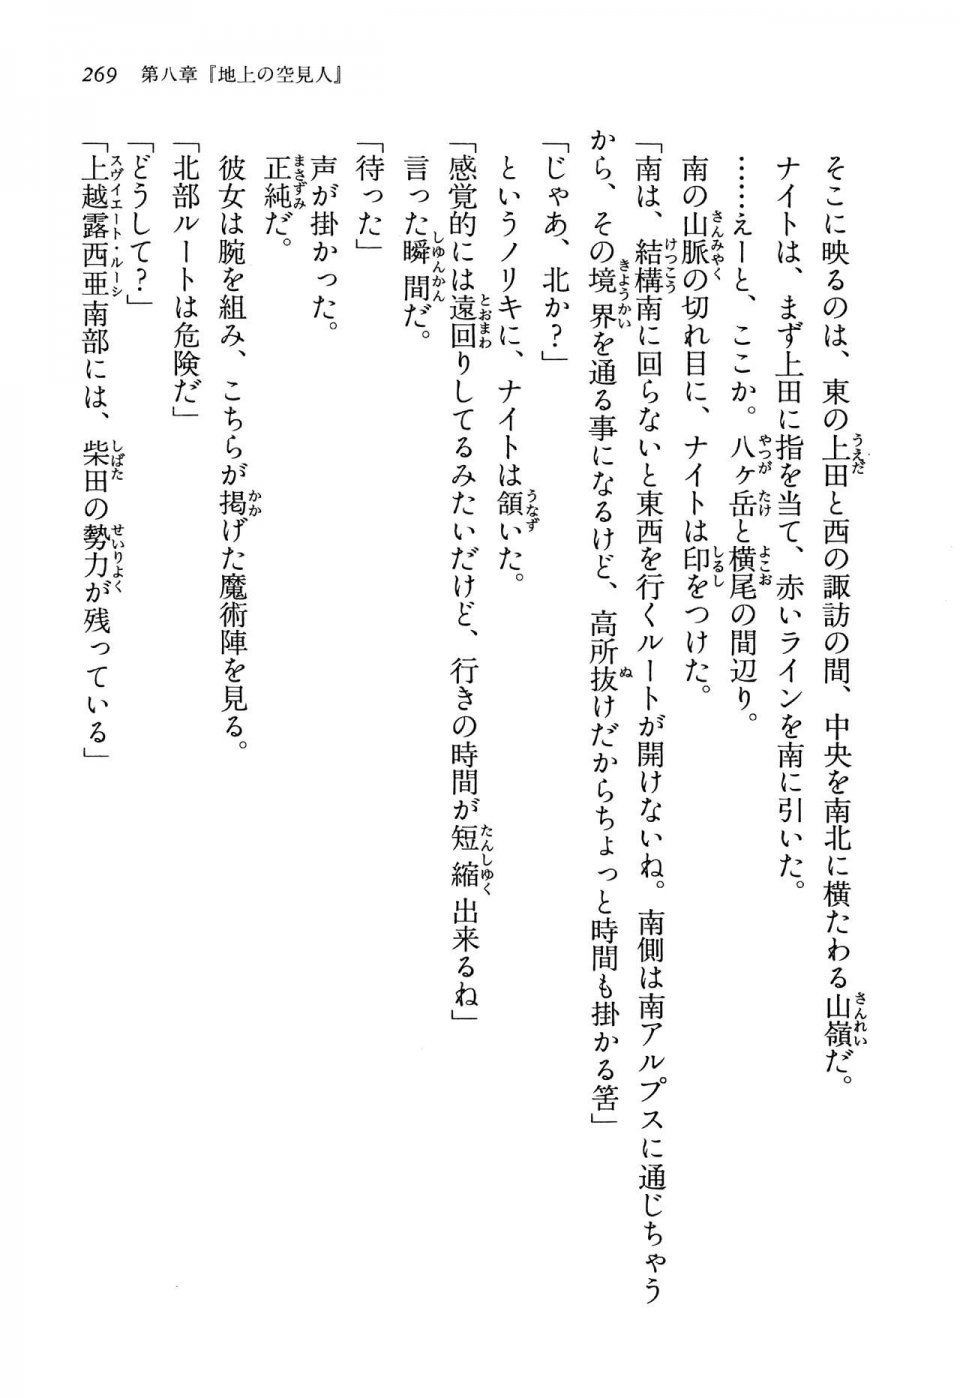 Kyoukai Senjou no Horizon LN Vol 13(6A) - Photo #269